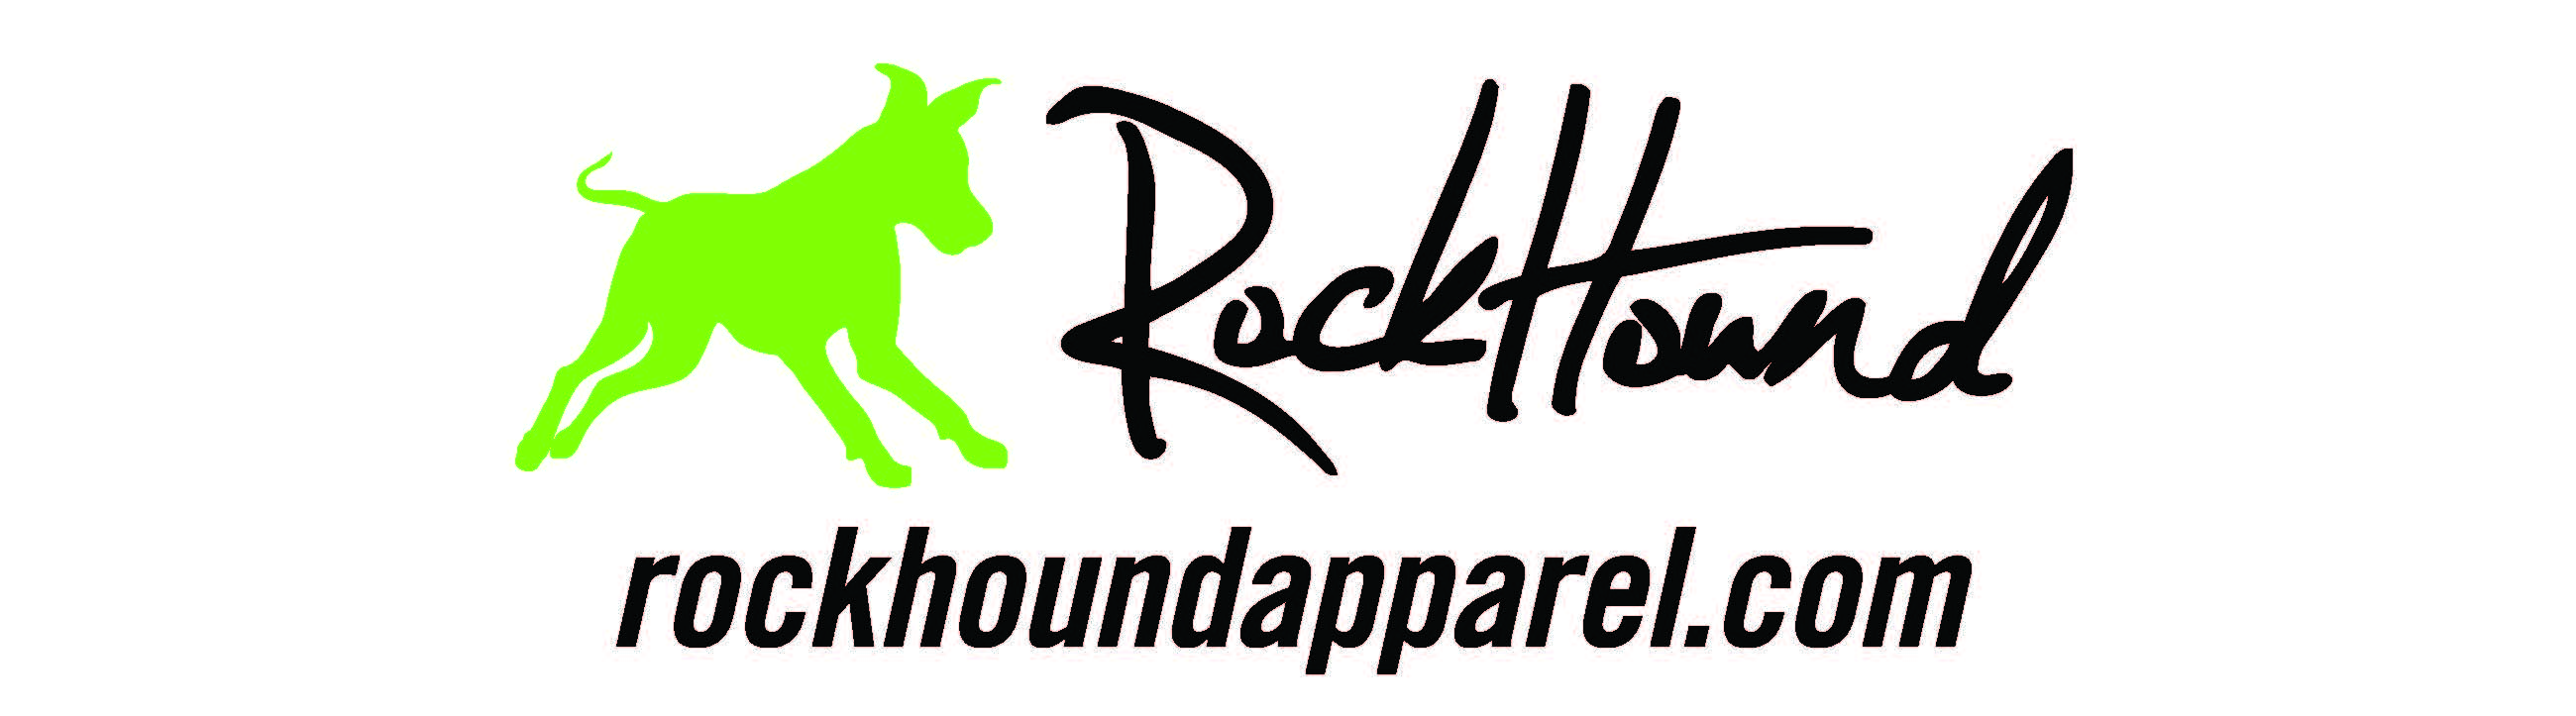 Roundhoundapparel.com